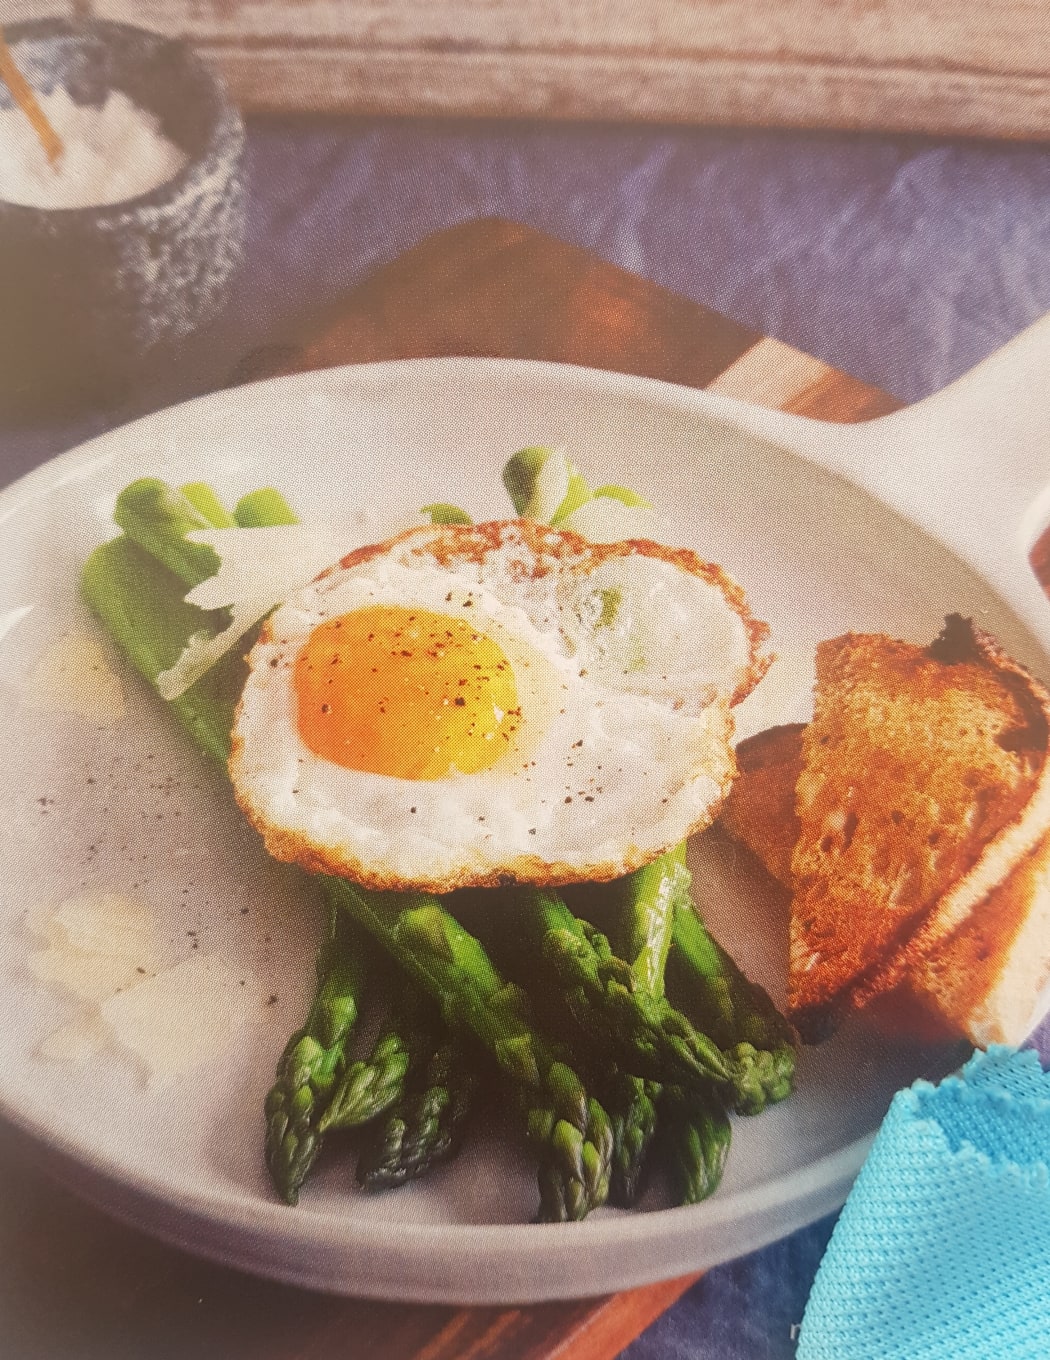 Breakfast asparagus with crispy egg